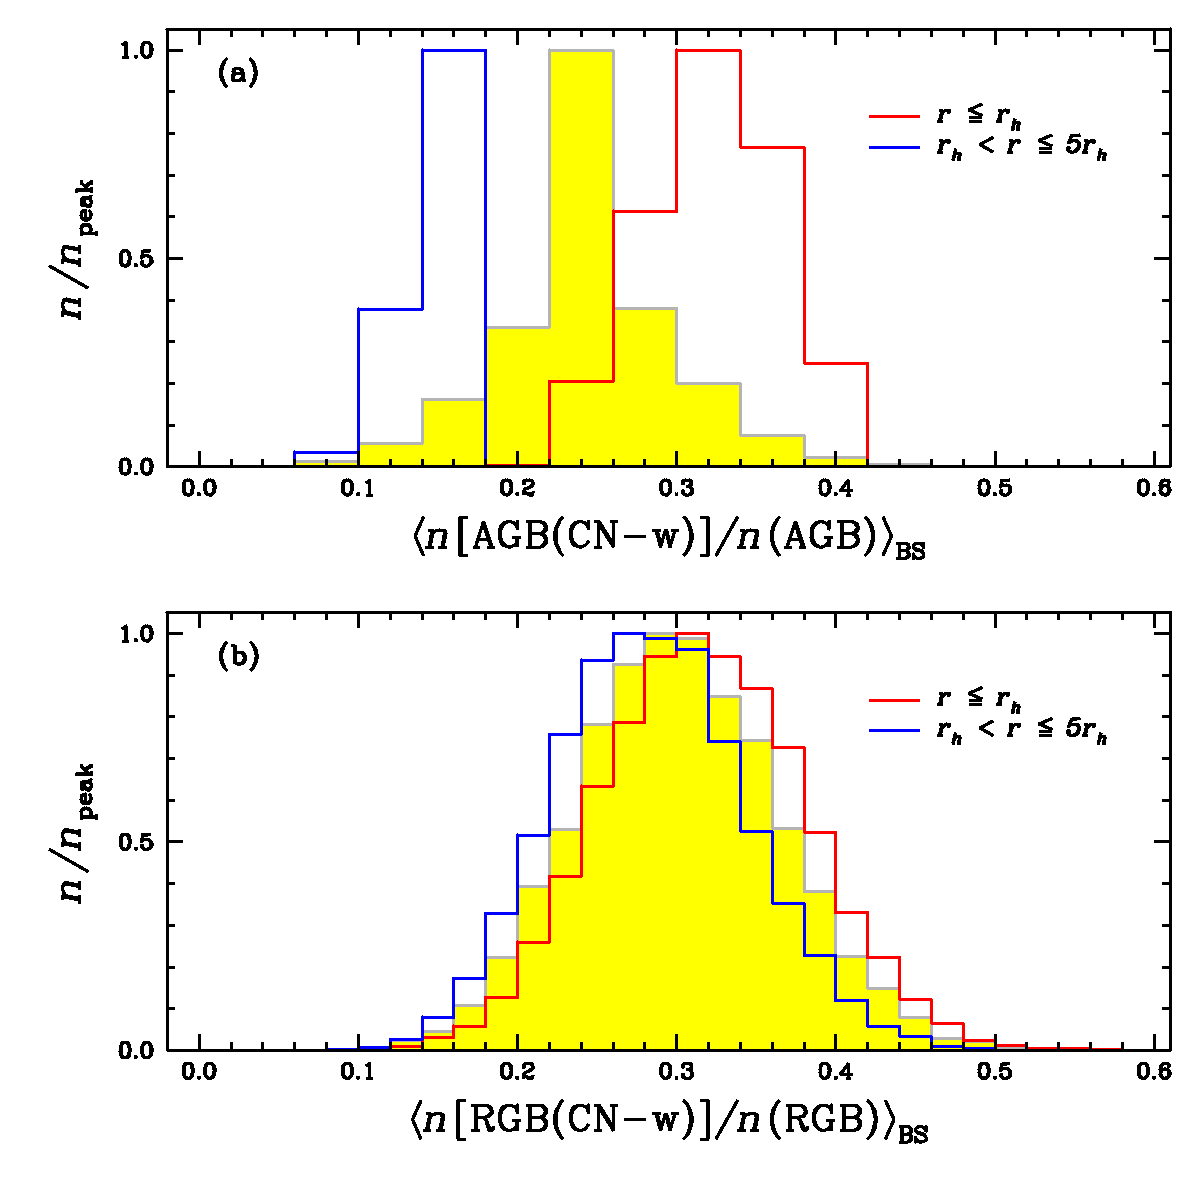 구상성단 M5의 점근계열거성 및 적색거성의 항성 종족비. 점근계열거성과 적색거성은 통계학적으로 동일한 다중종족 비율을 갖는다 (Lee 2017)